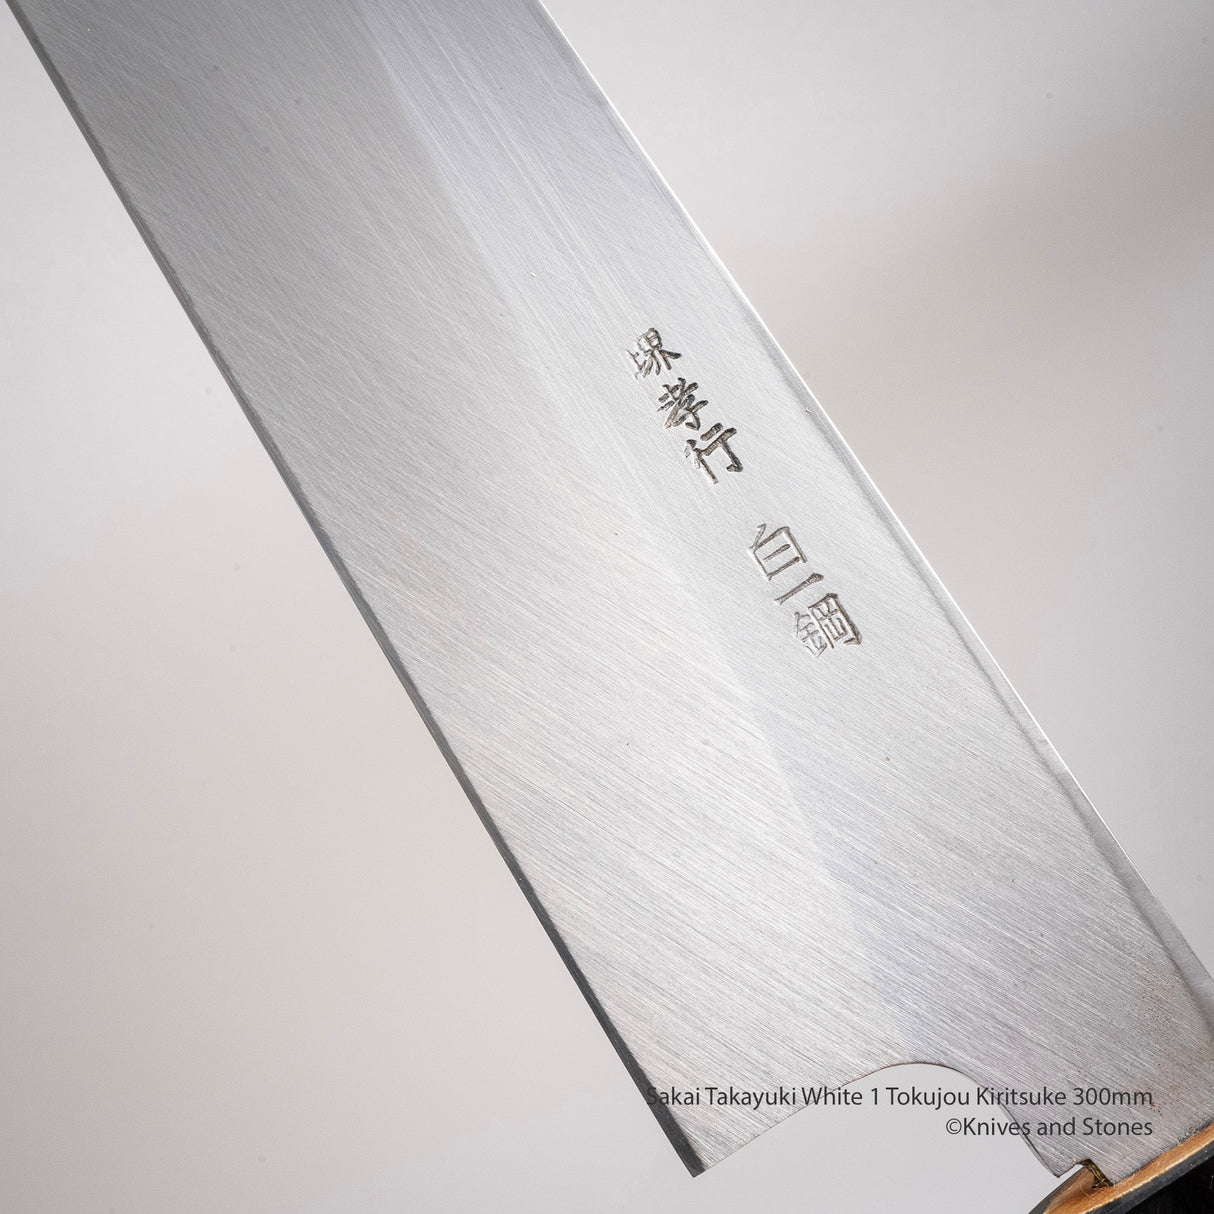 Sakai Takayuki Tokujou Kiritsuke 300mm White 2 Carbon Steel